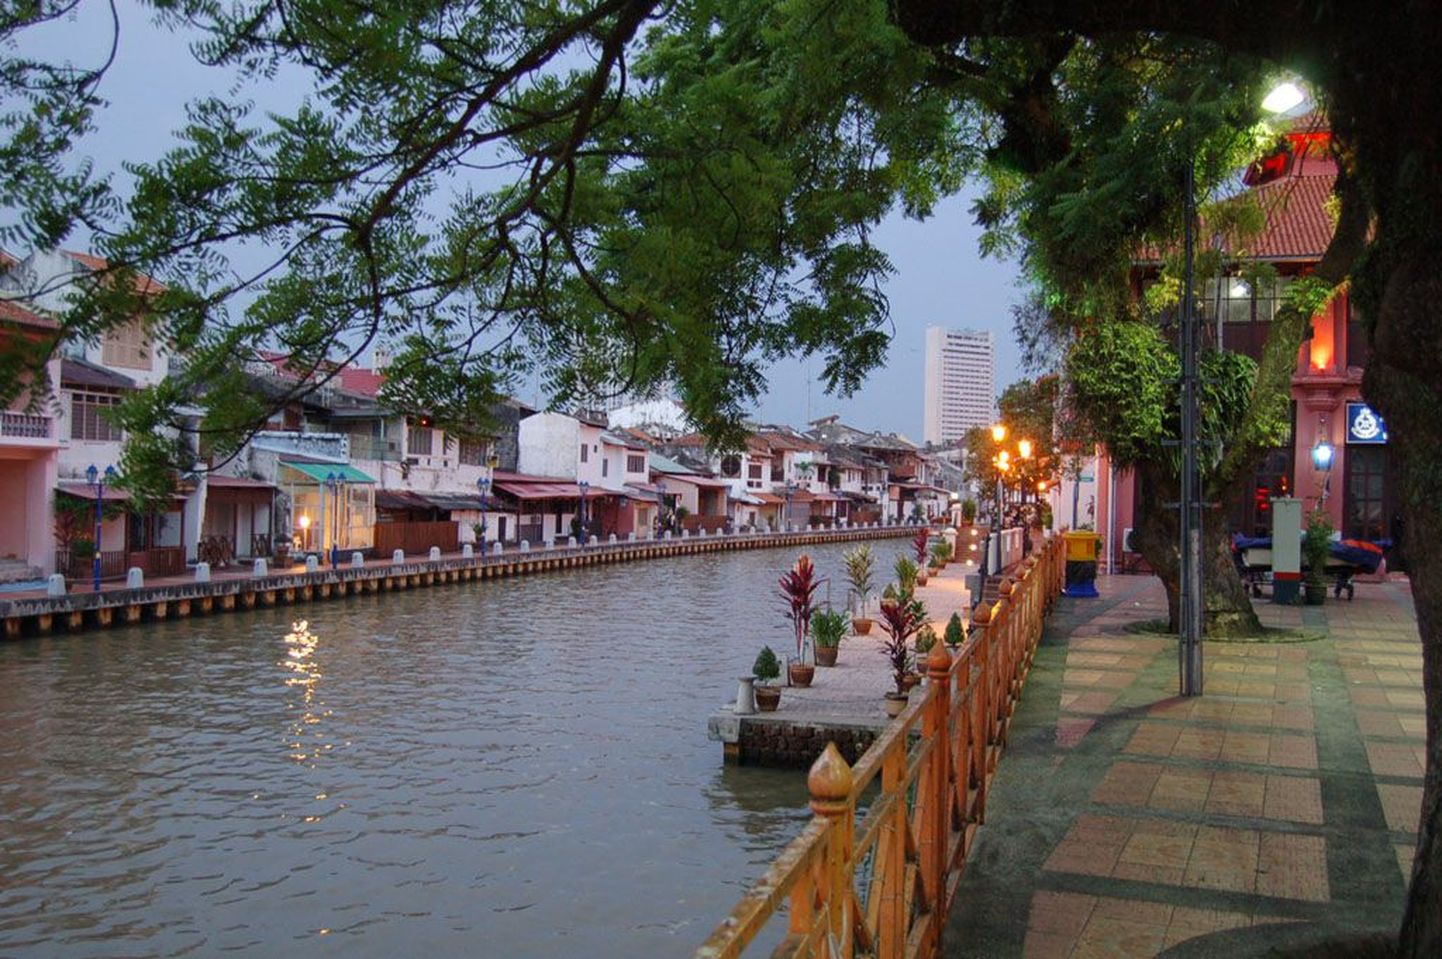 Päeval mõjub Melaka linna läbiv samanimeline jõgi sootuks erinevana kui öösel, mil jõgib muutub salapäraseks.